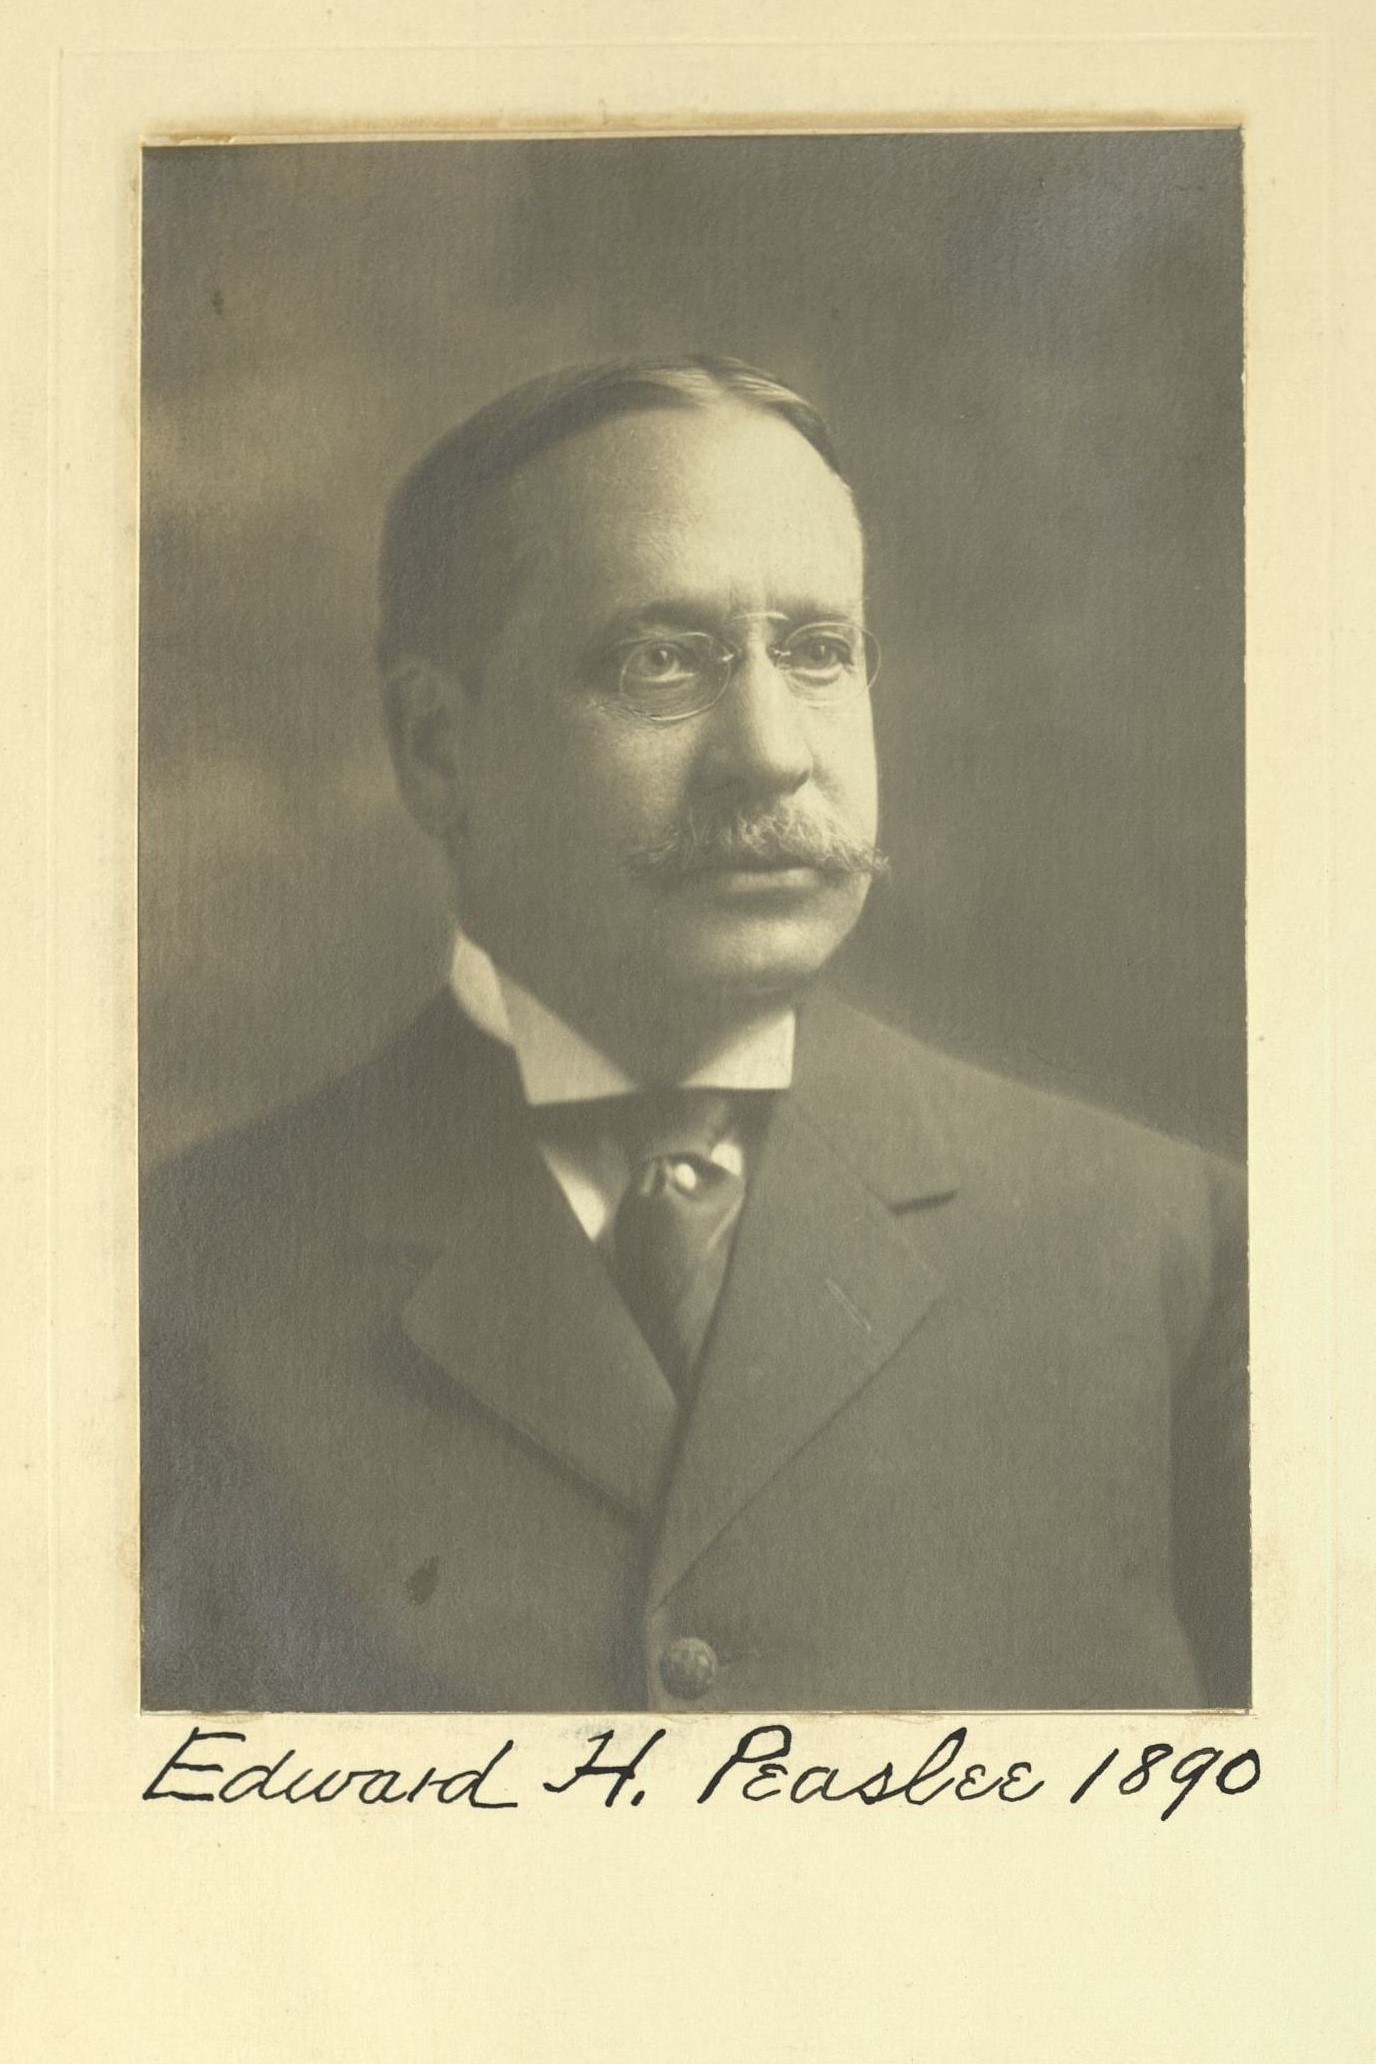 Member portrait of Edward H. Peaslee